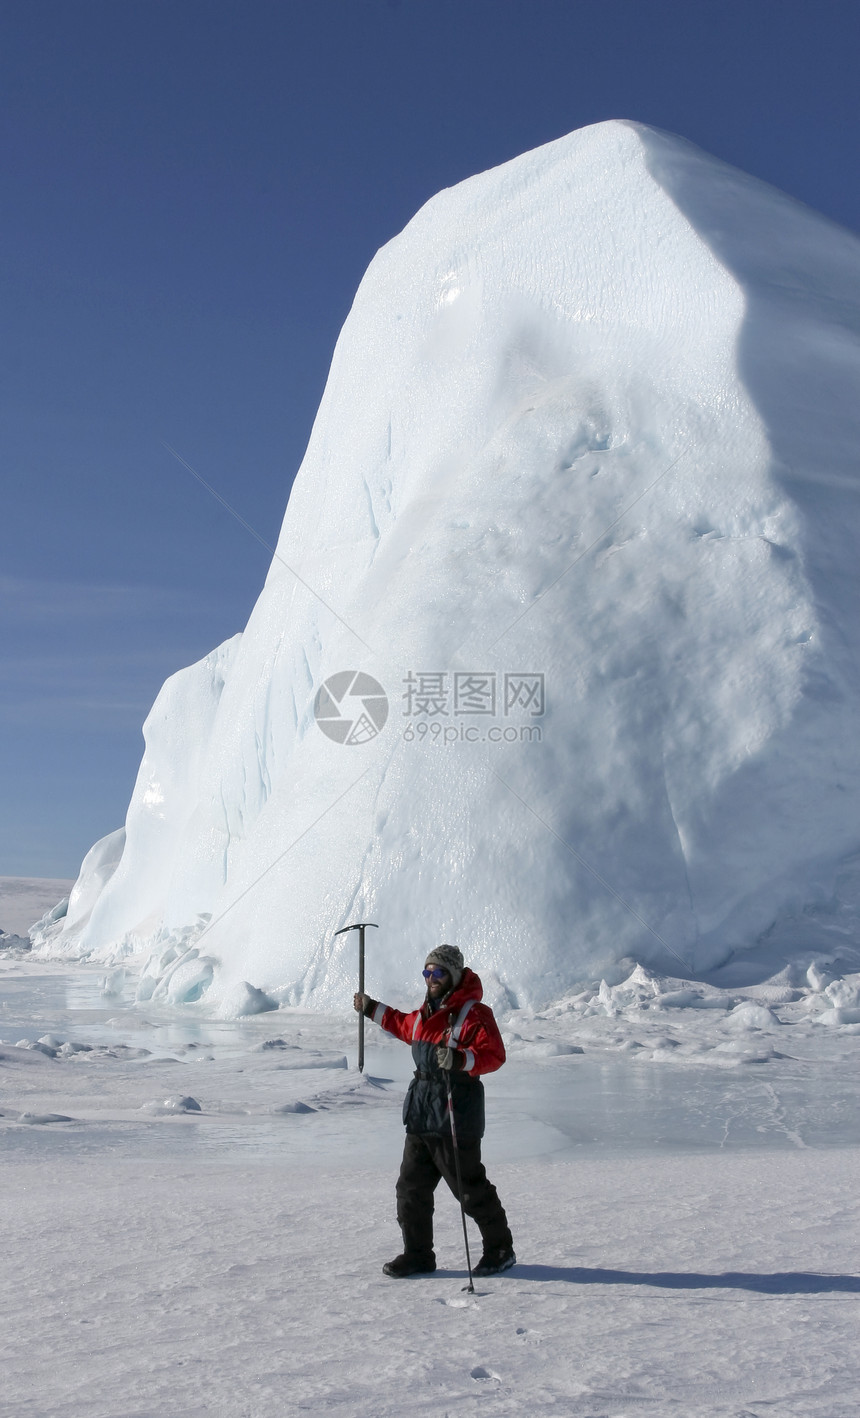 登山者冒险登山冒险家冻结冷冻图片